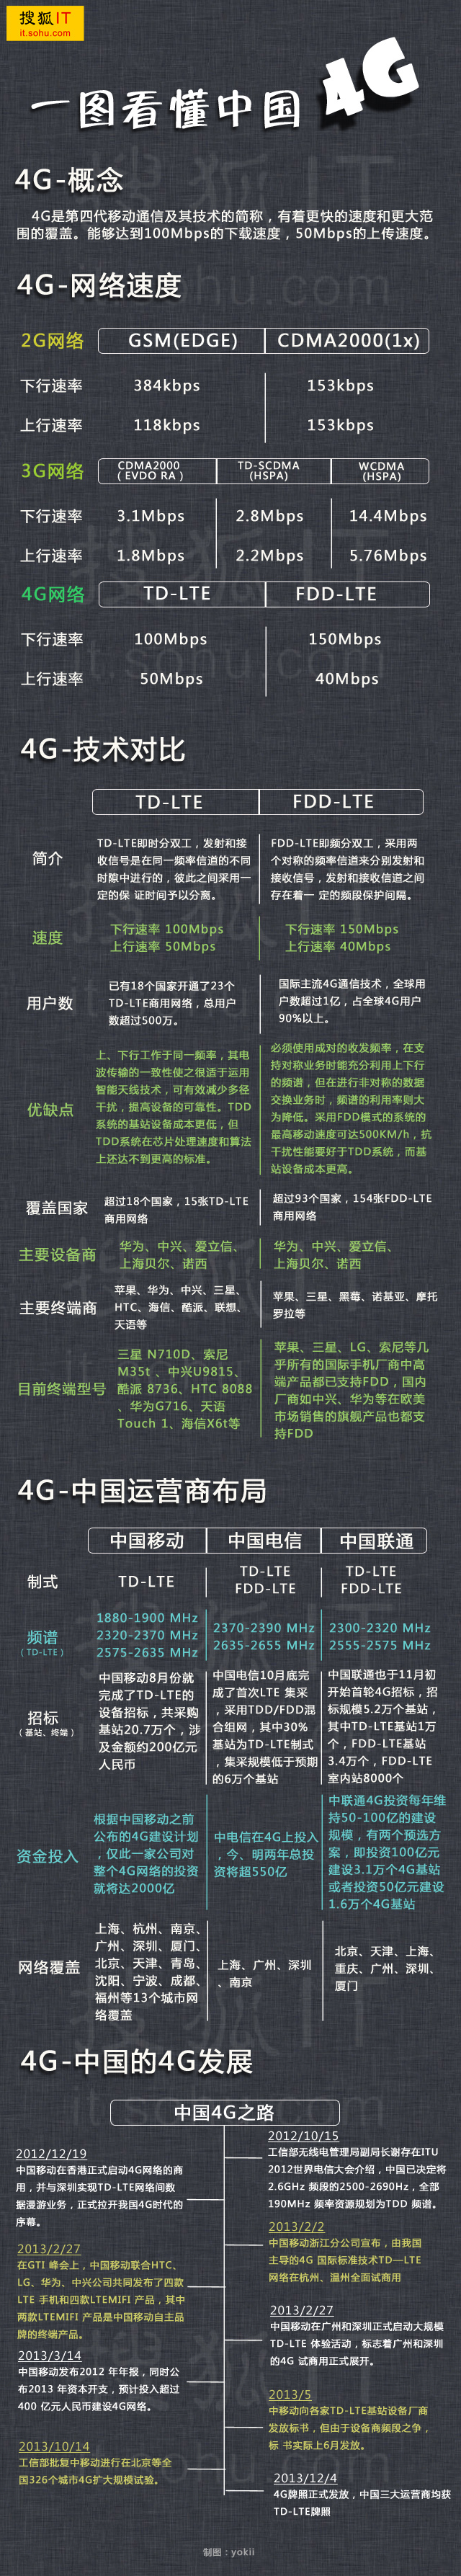 一图看懂中国4G